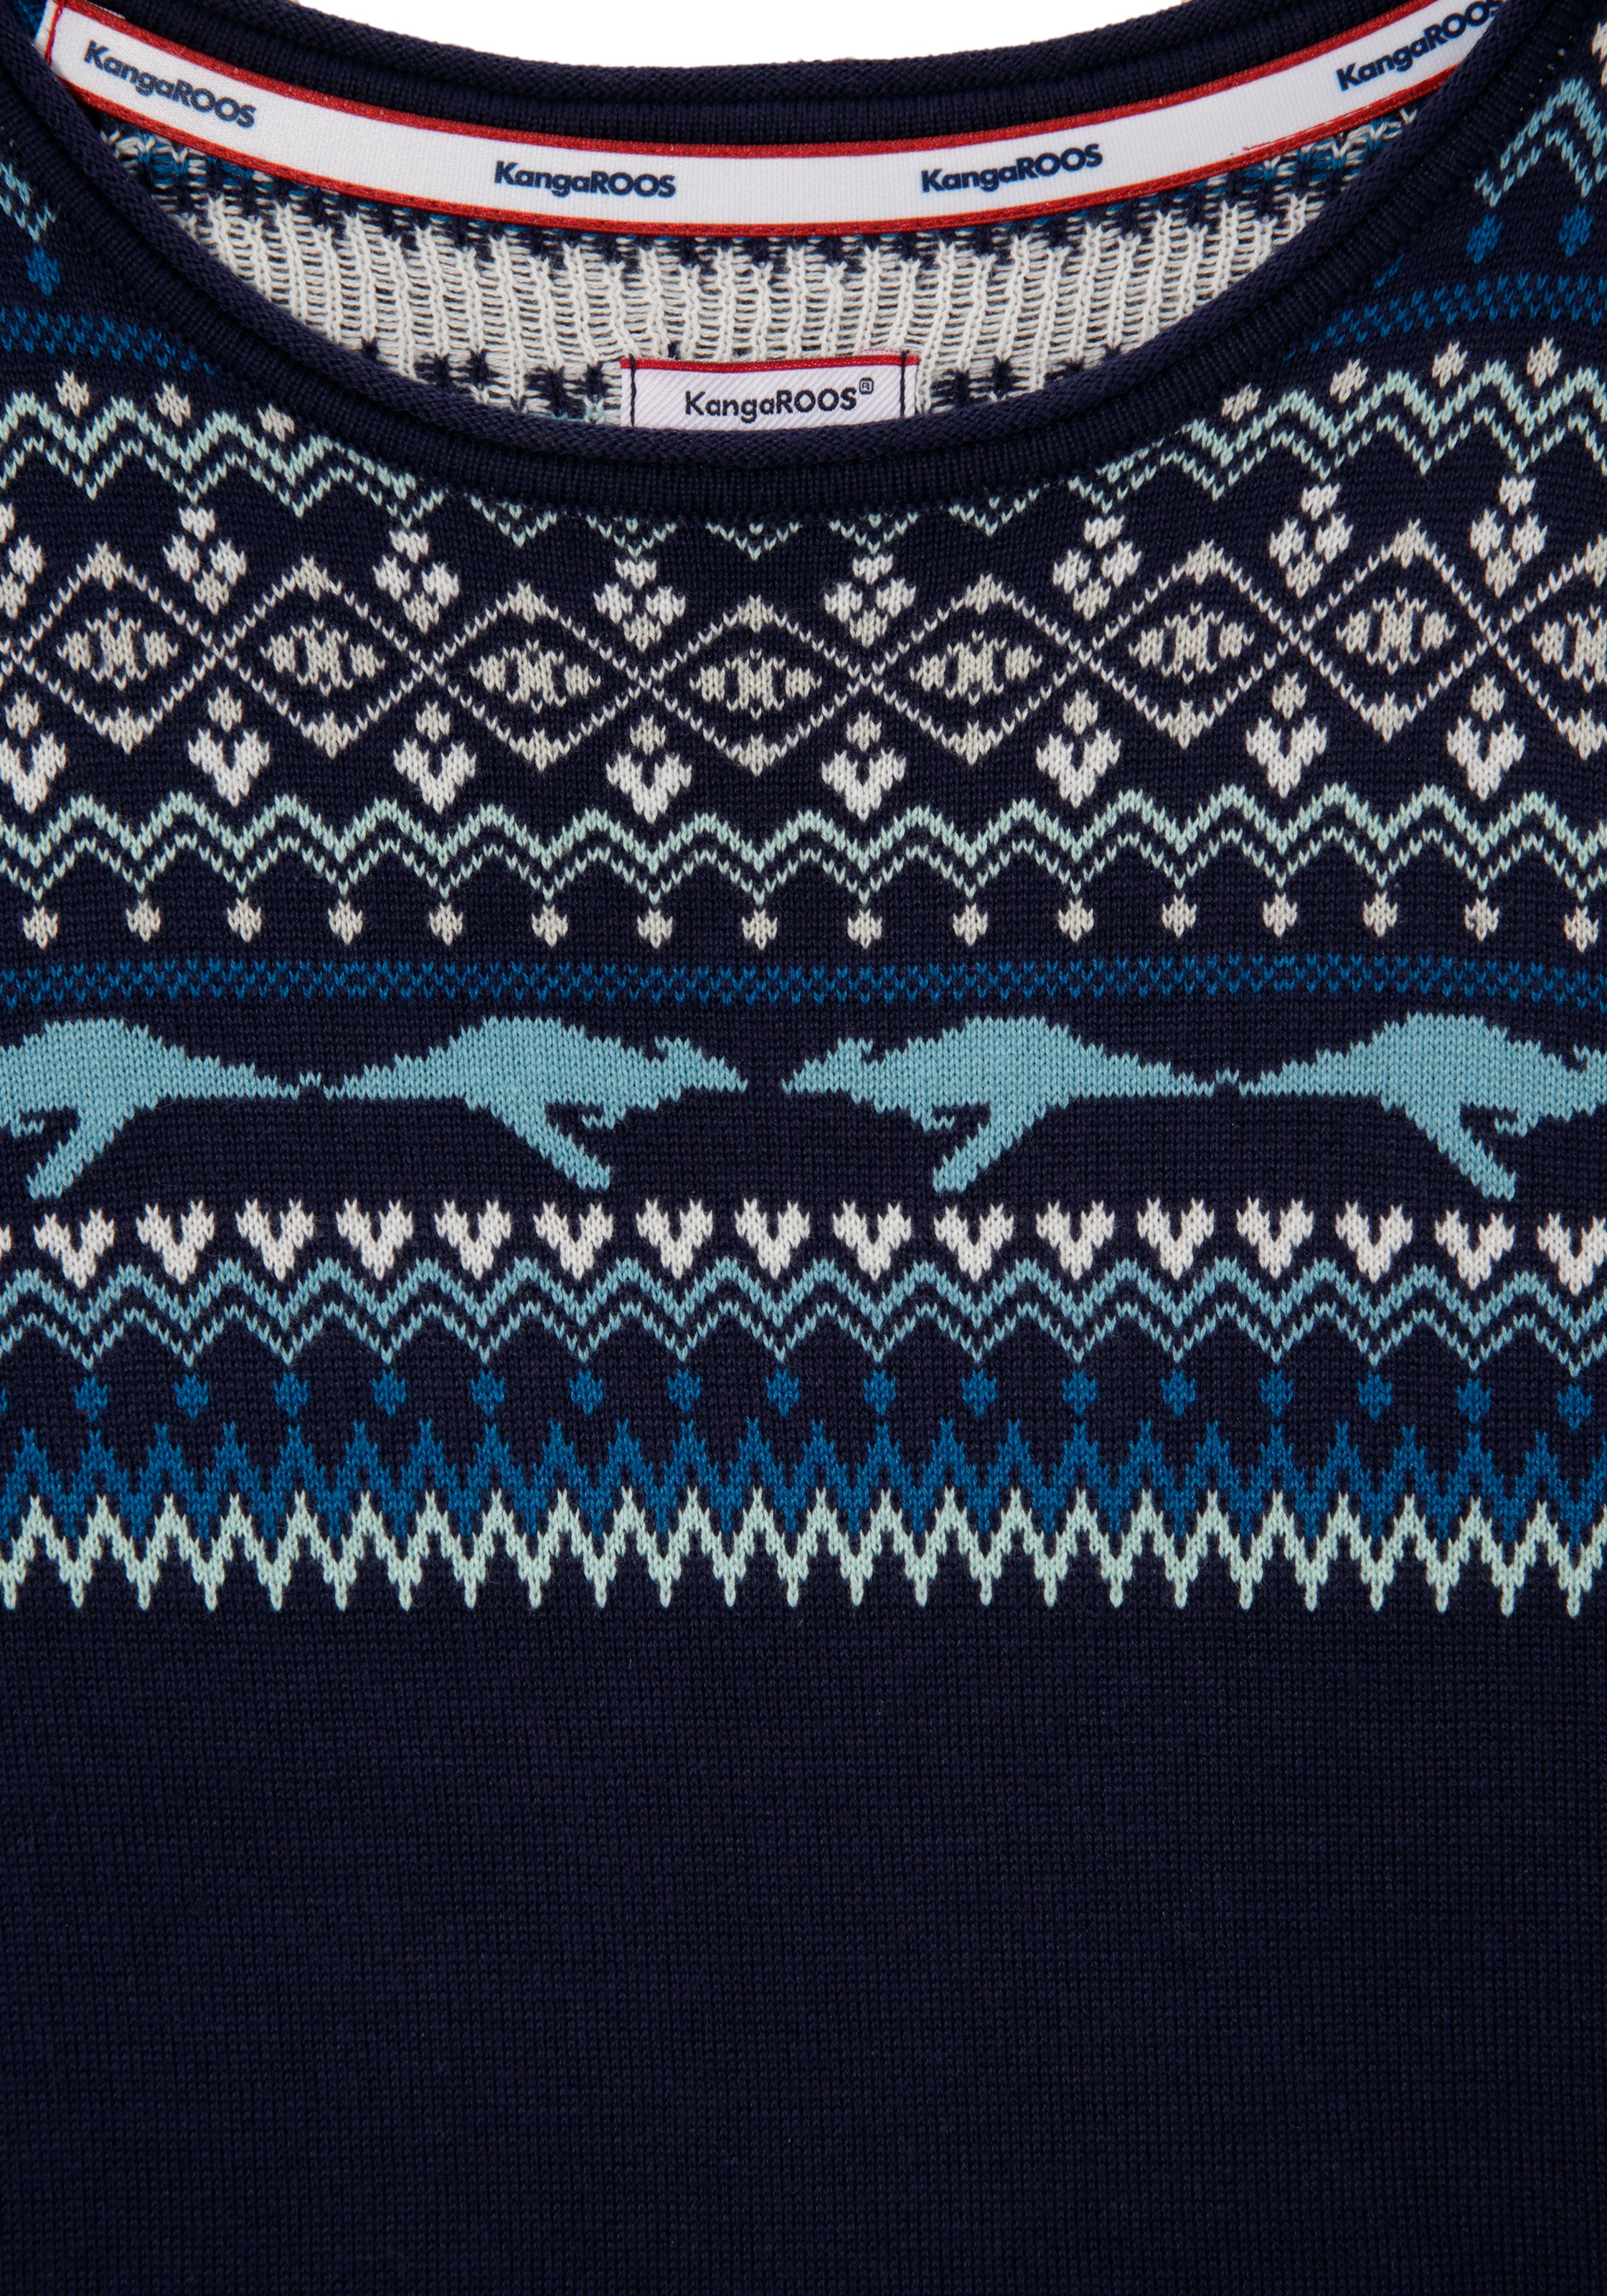 KangaROOS Norwegerpullover, im winterlichen Design